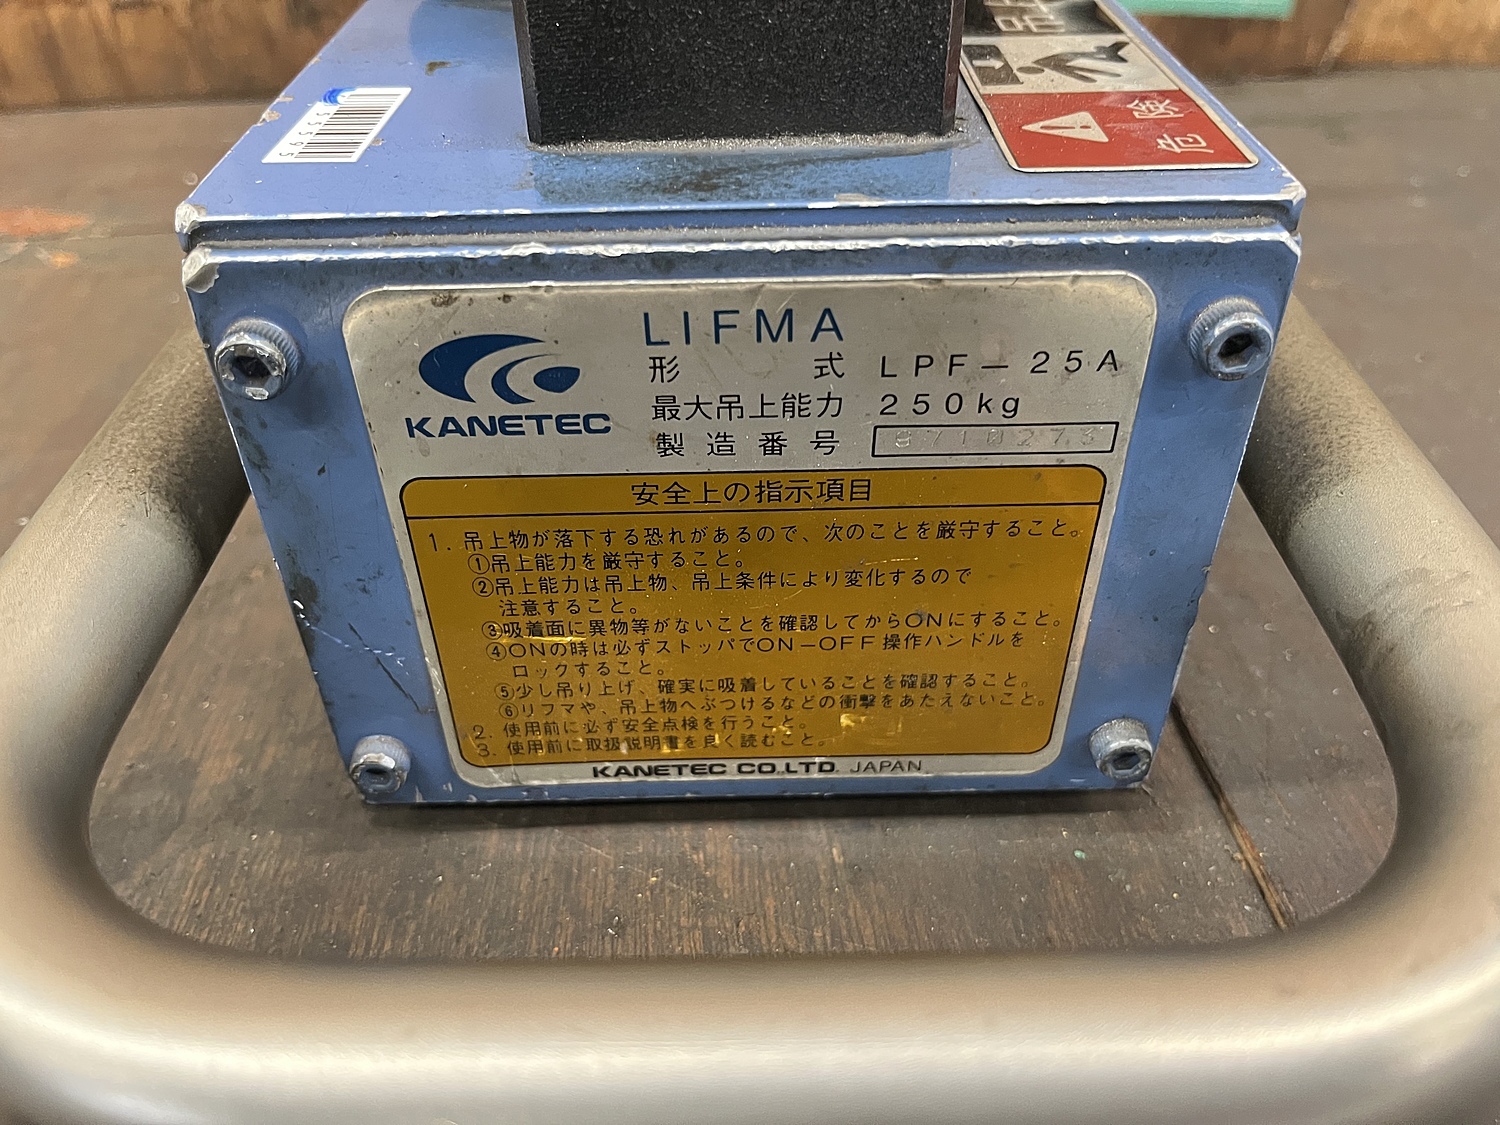 C155595 永磁リフマ カネテック LPF-25A | 株式会社 小林機械